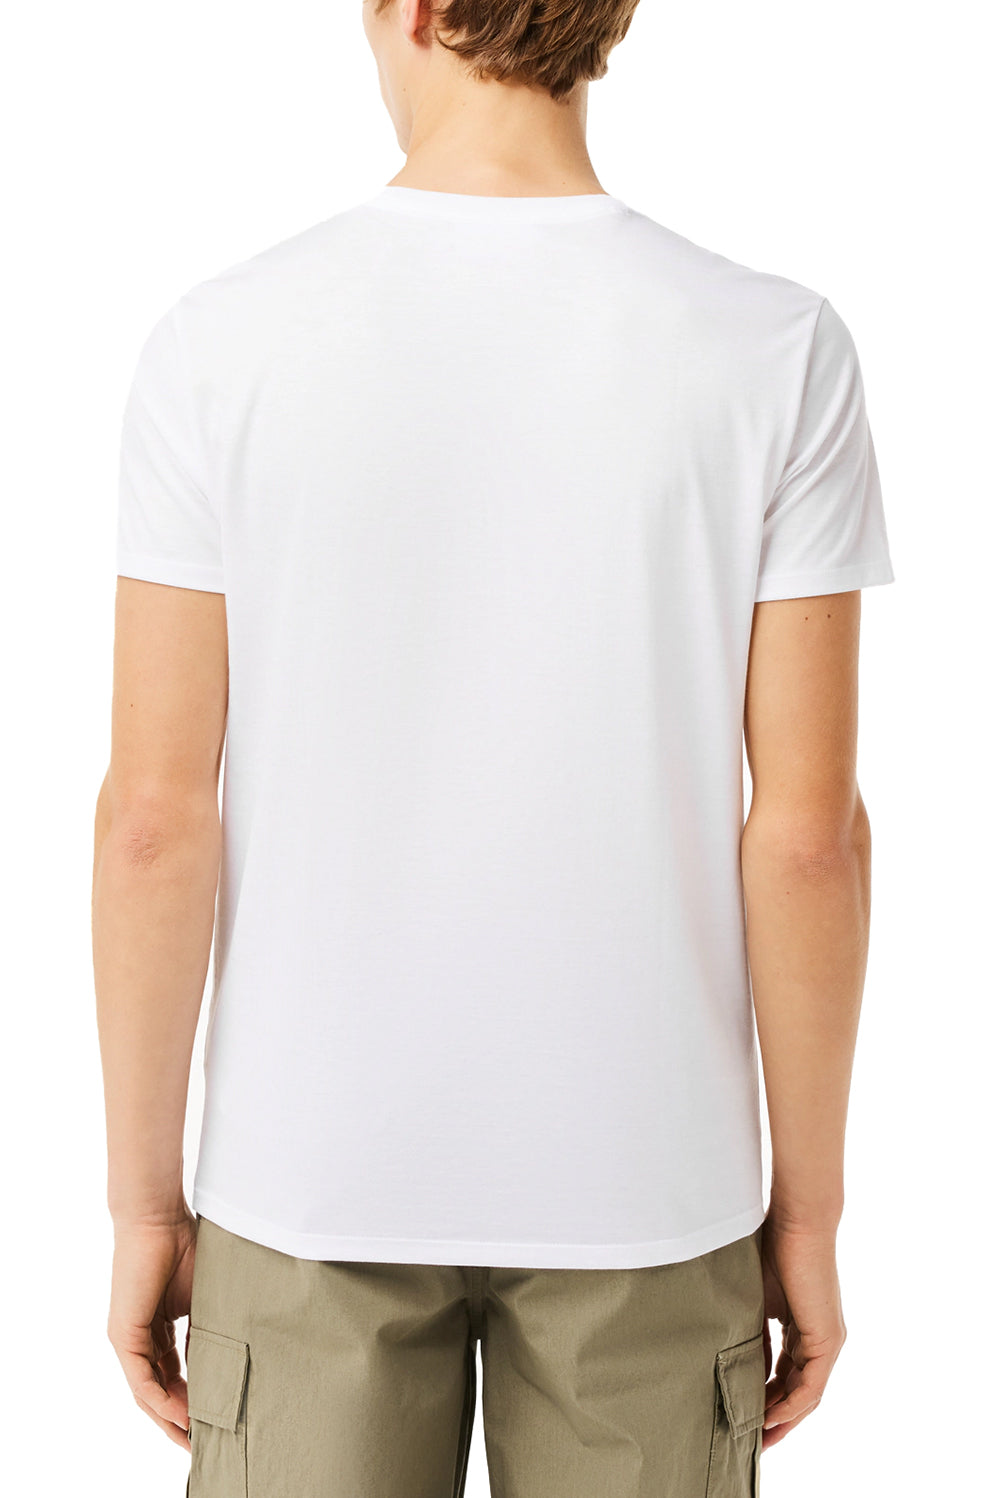  Lacoste Crew Neck T-shirt Uomo - 3